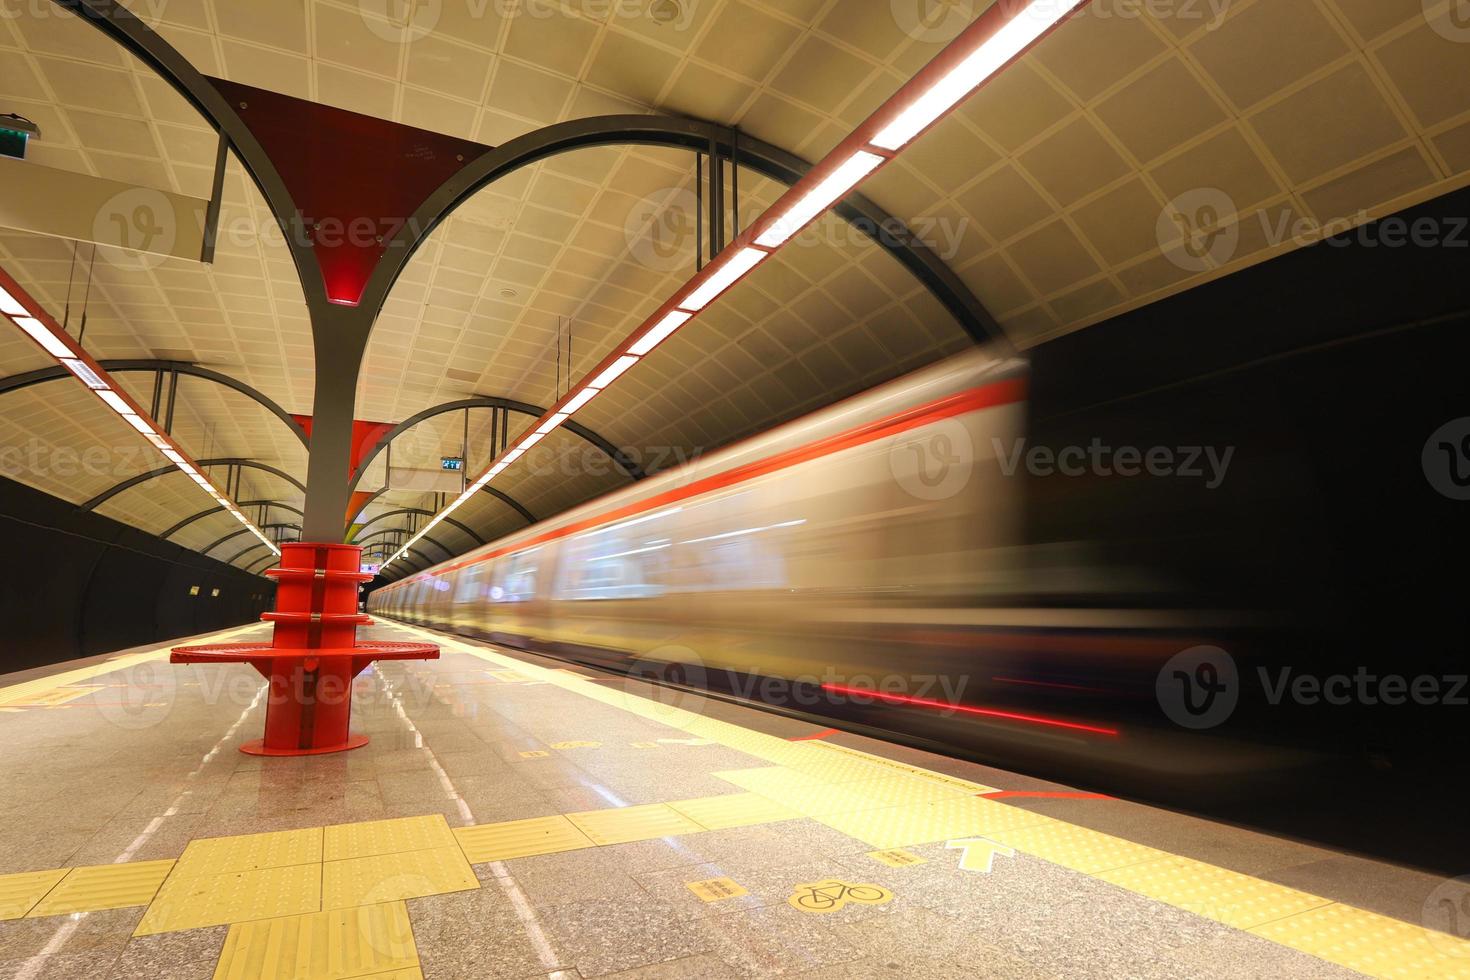 metro moviéndose en una estación foto